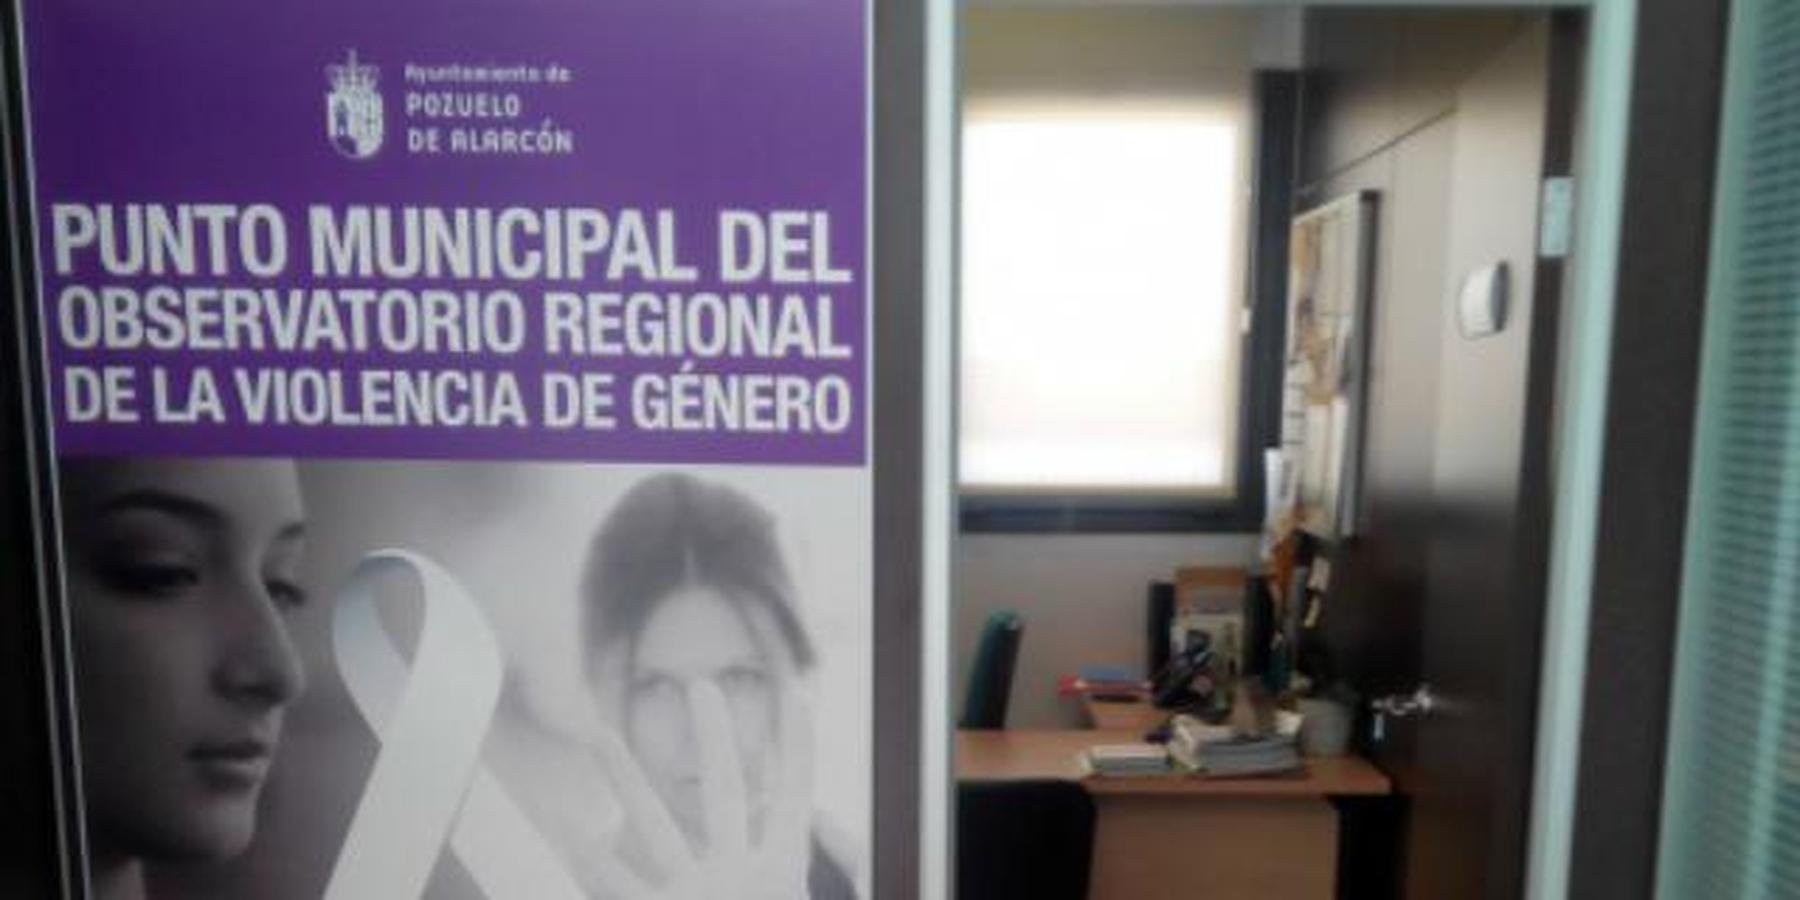 El Punto Municipal del Observatorio Regional de Violencia de Género registra un incremento del 7,15% de actuaciones entre enero y agosto